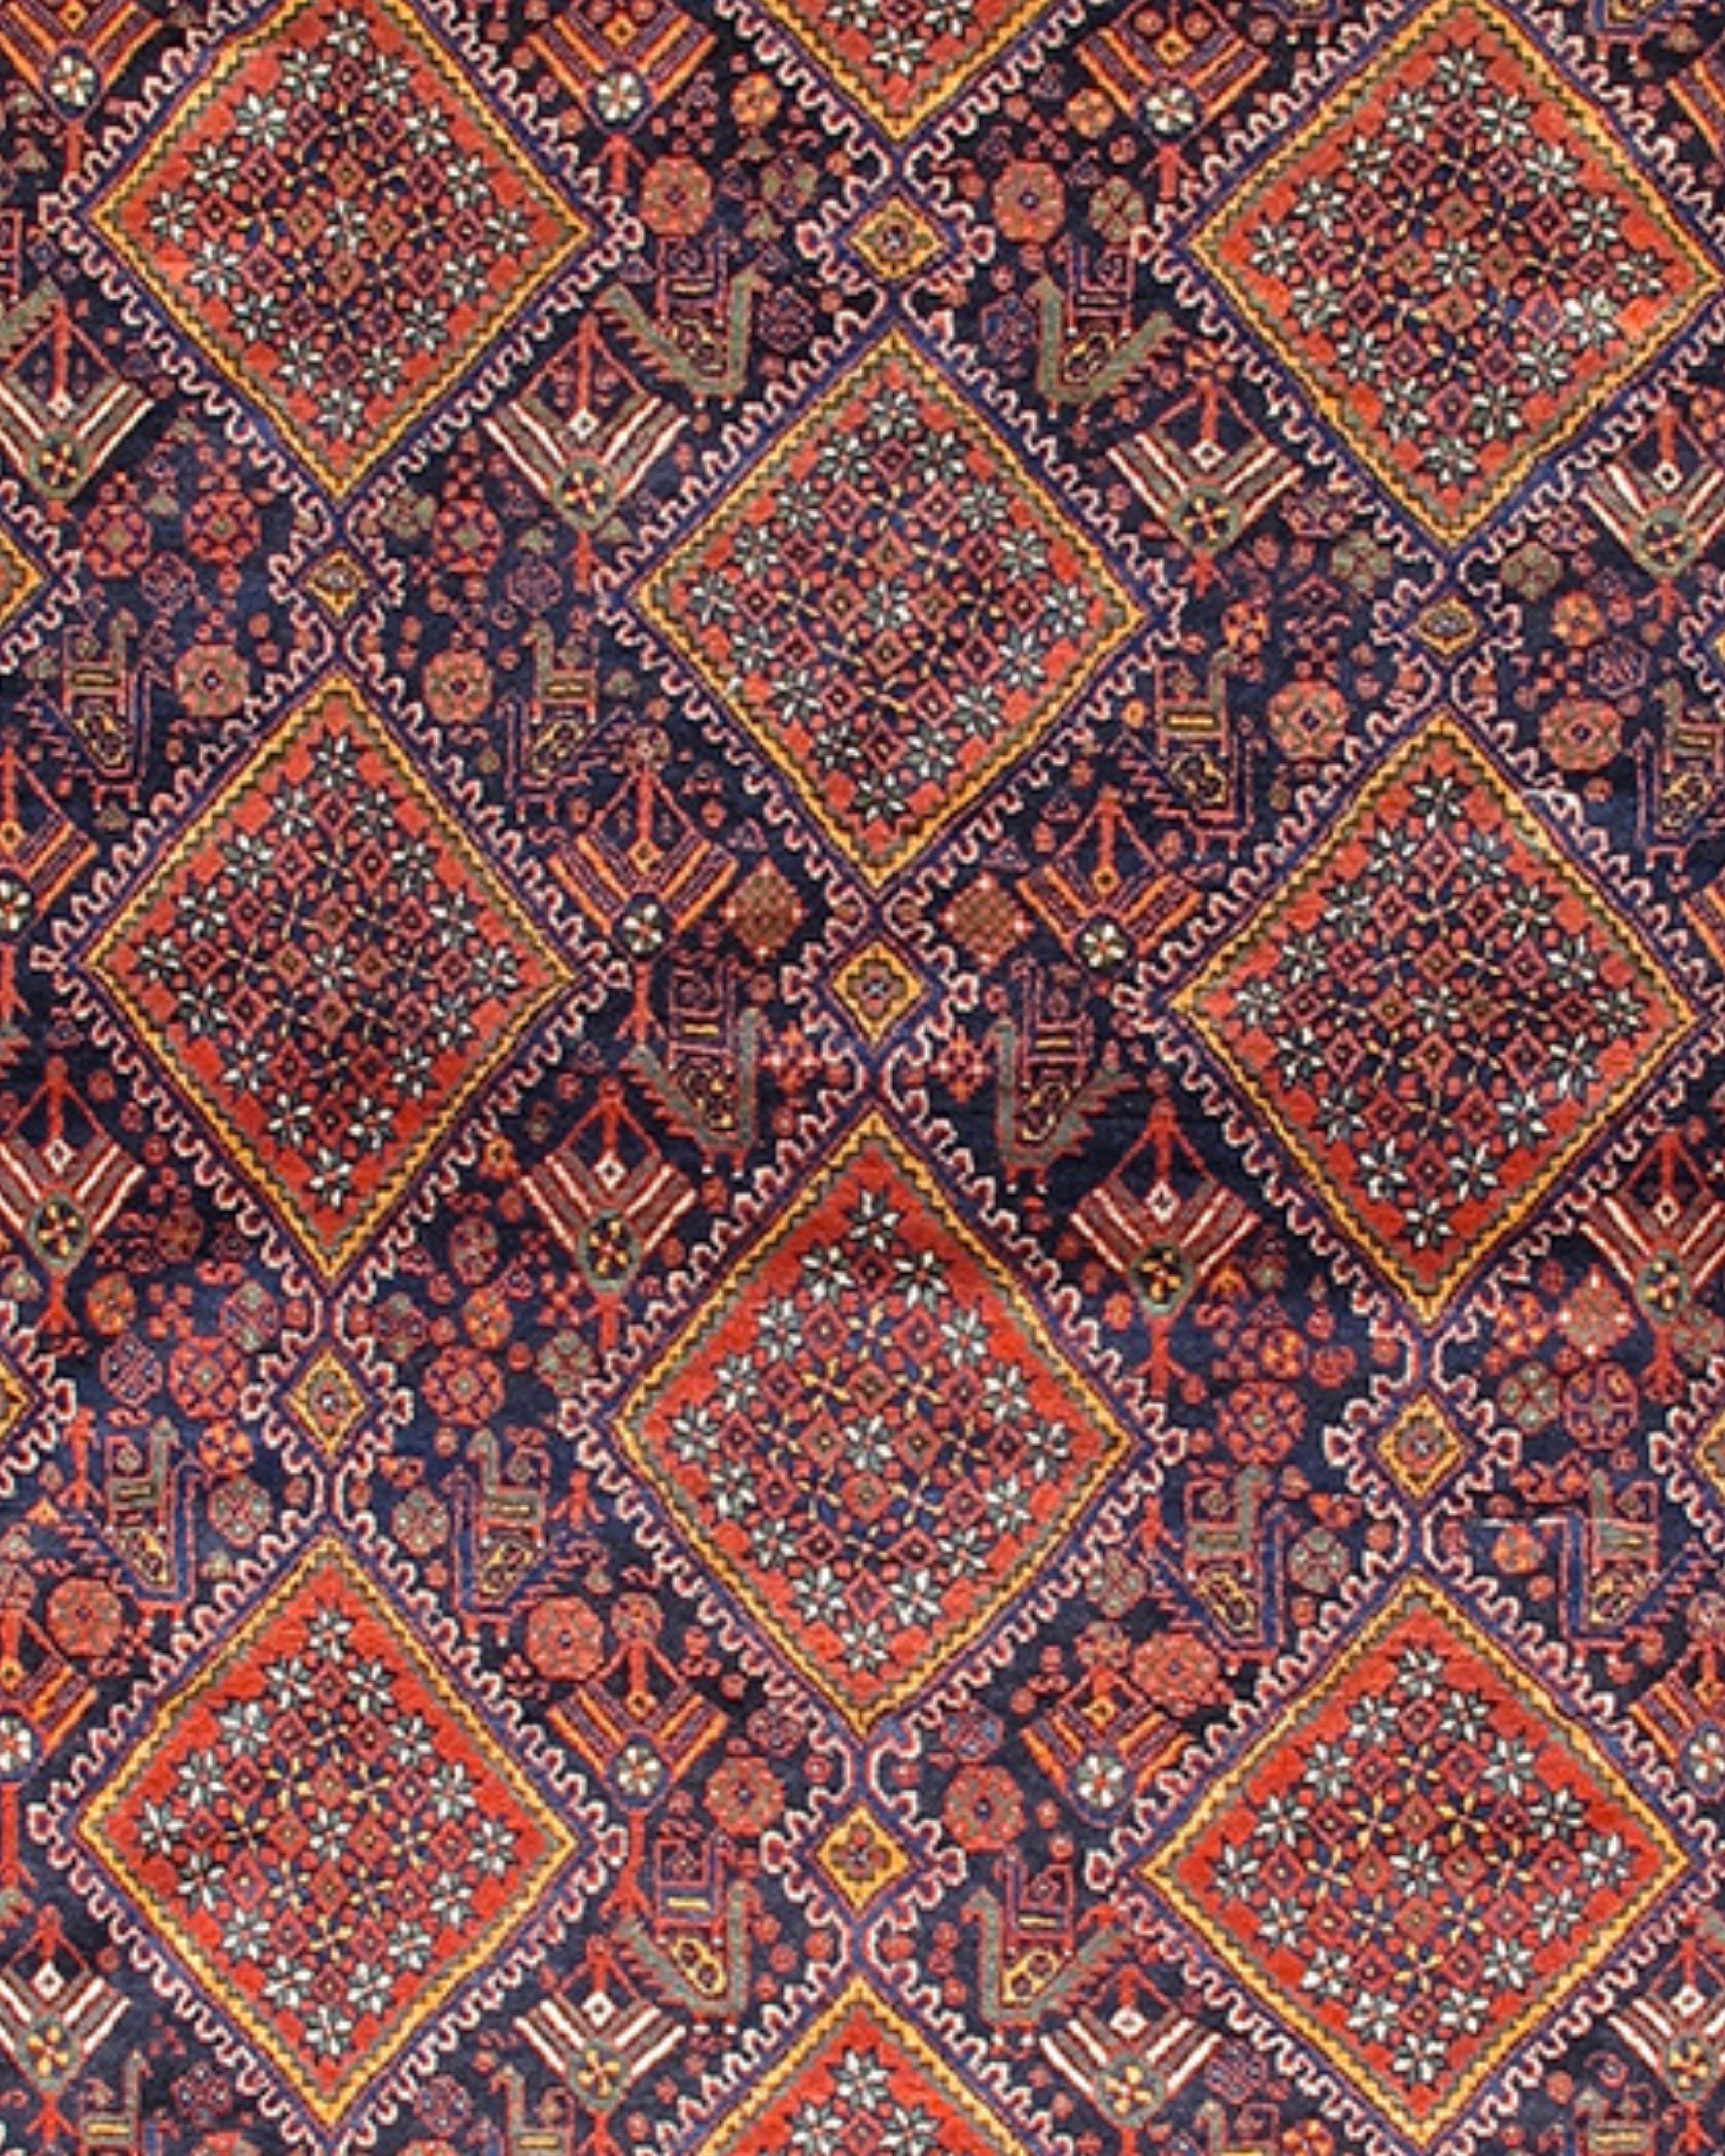 Afshar-Teppich, frühes 20. Jahrhundert

Zusätzliche Informationen:
Abmessungen: 7'5